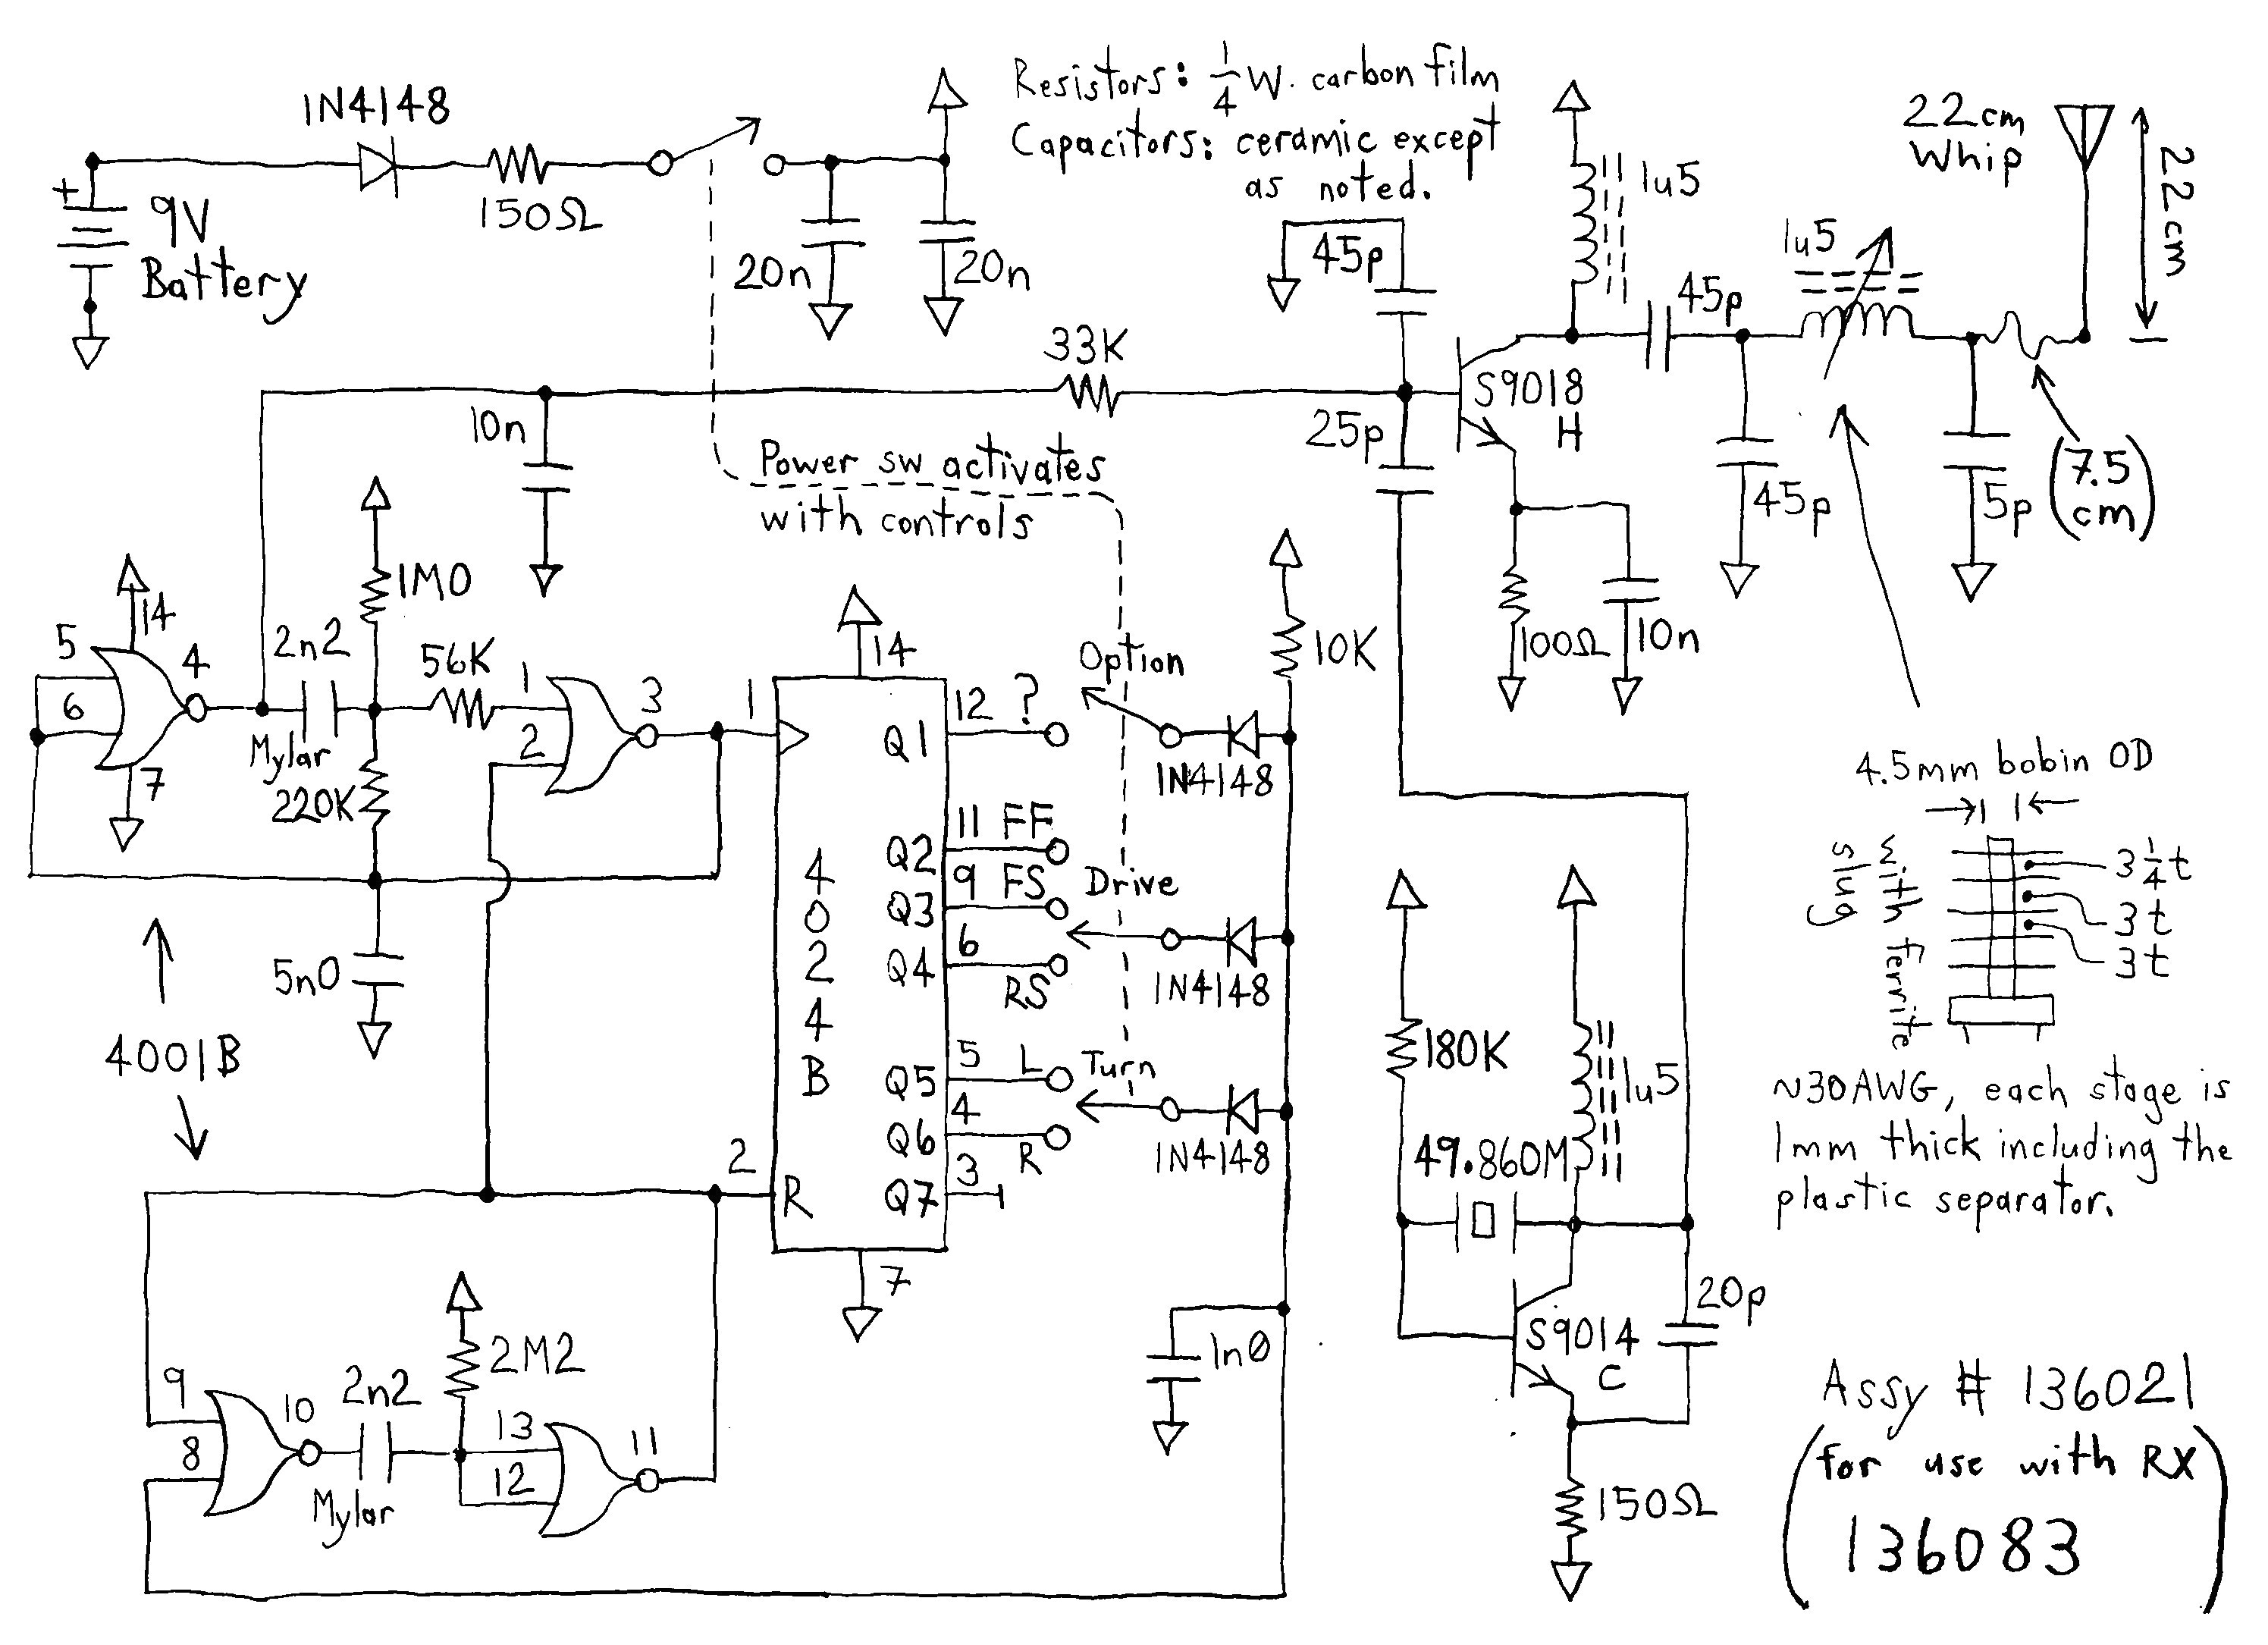 wiring diagram of zen car wiring diagram m6 wiring diagram of a car unique new wiring